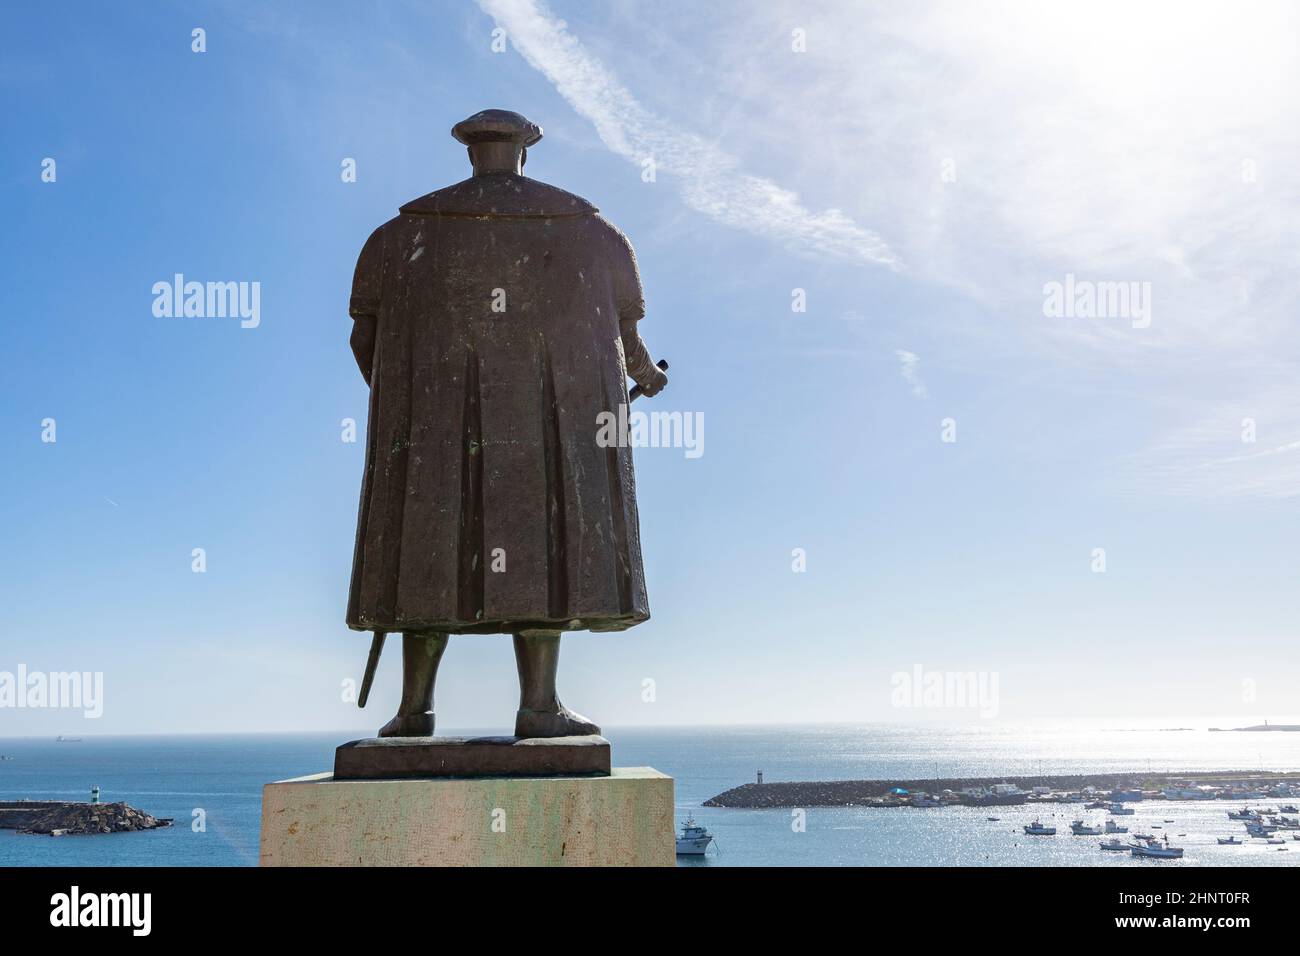 L'explorateur portugais Vasco da Gama statue devant l'église à Sines. Alentejo, Portugal Banque D'Images